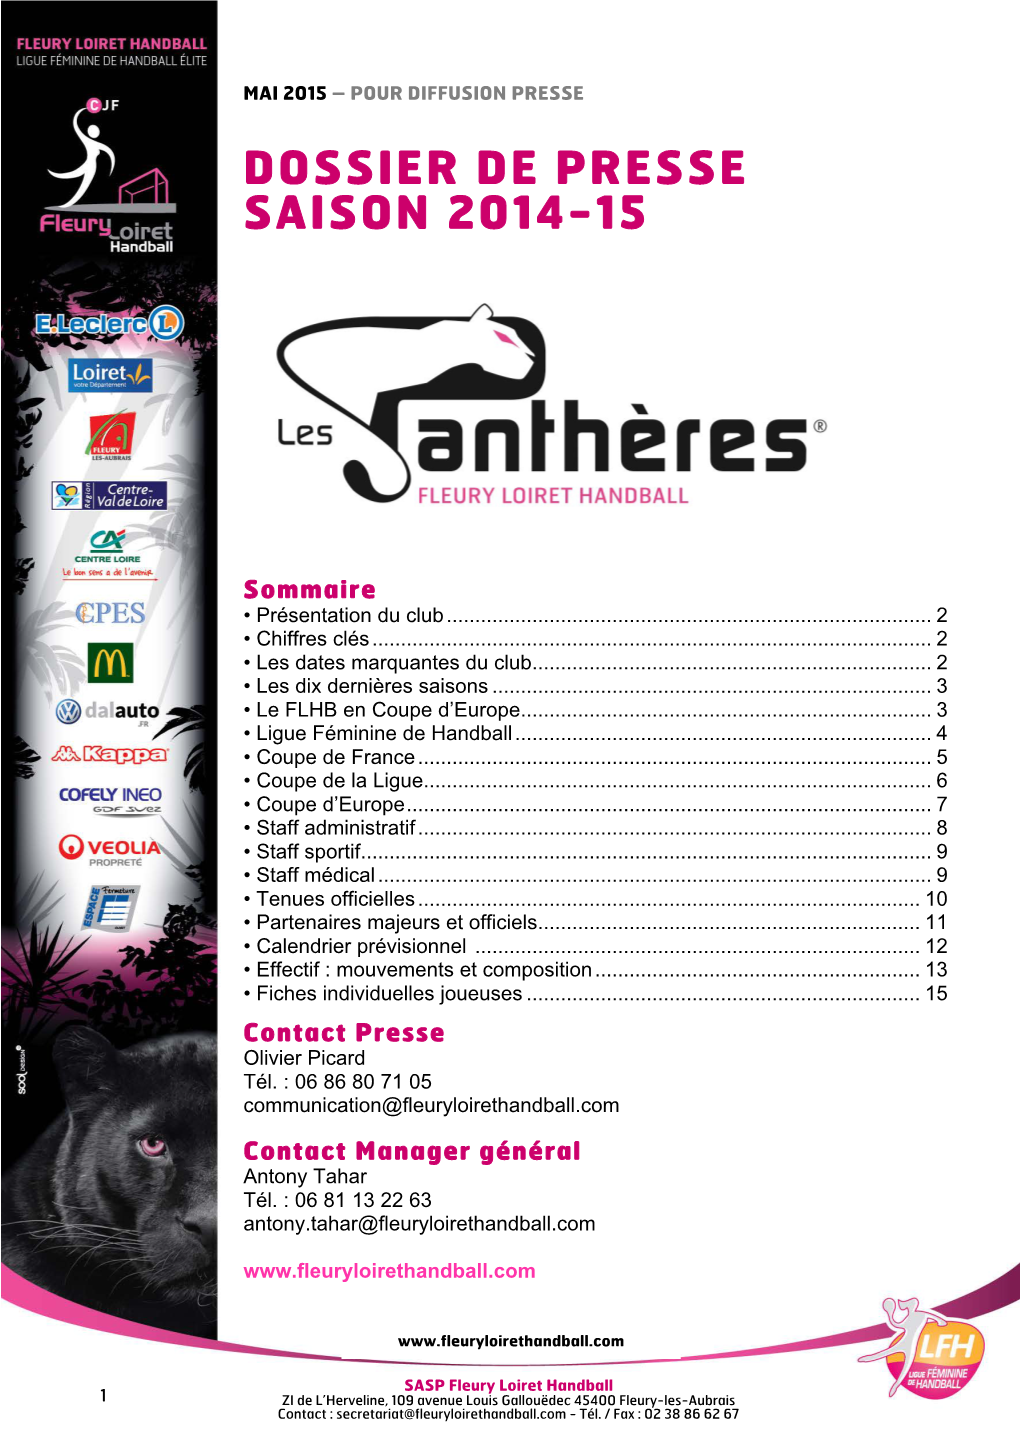 Dossier De Presse Saison 2014-15